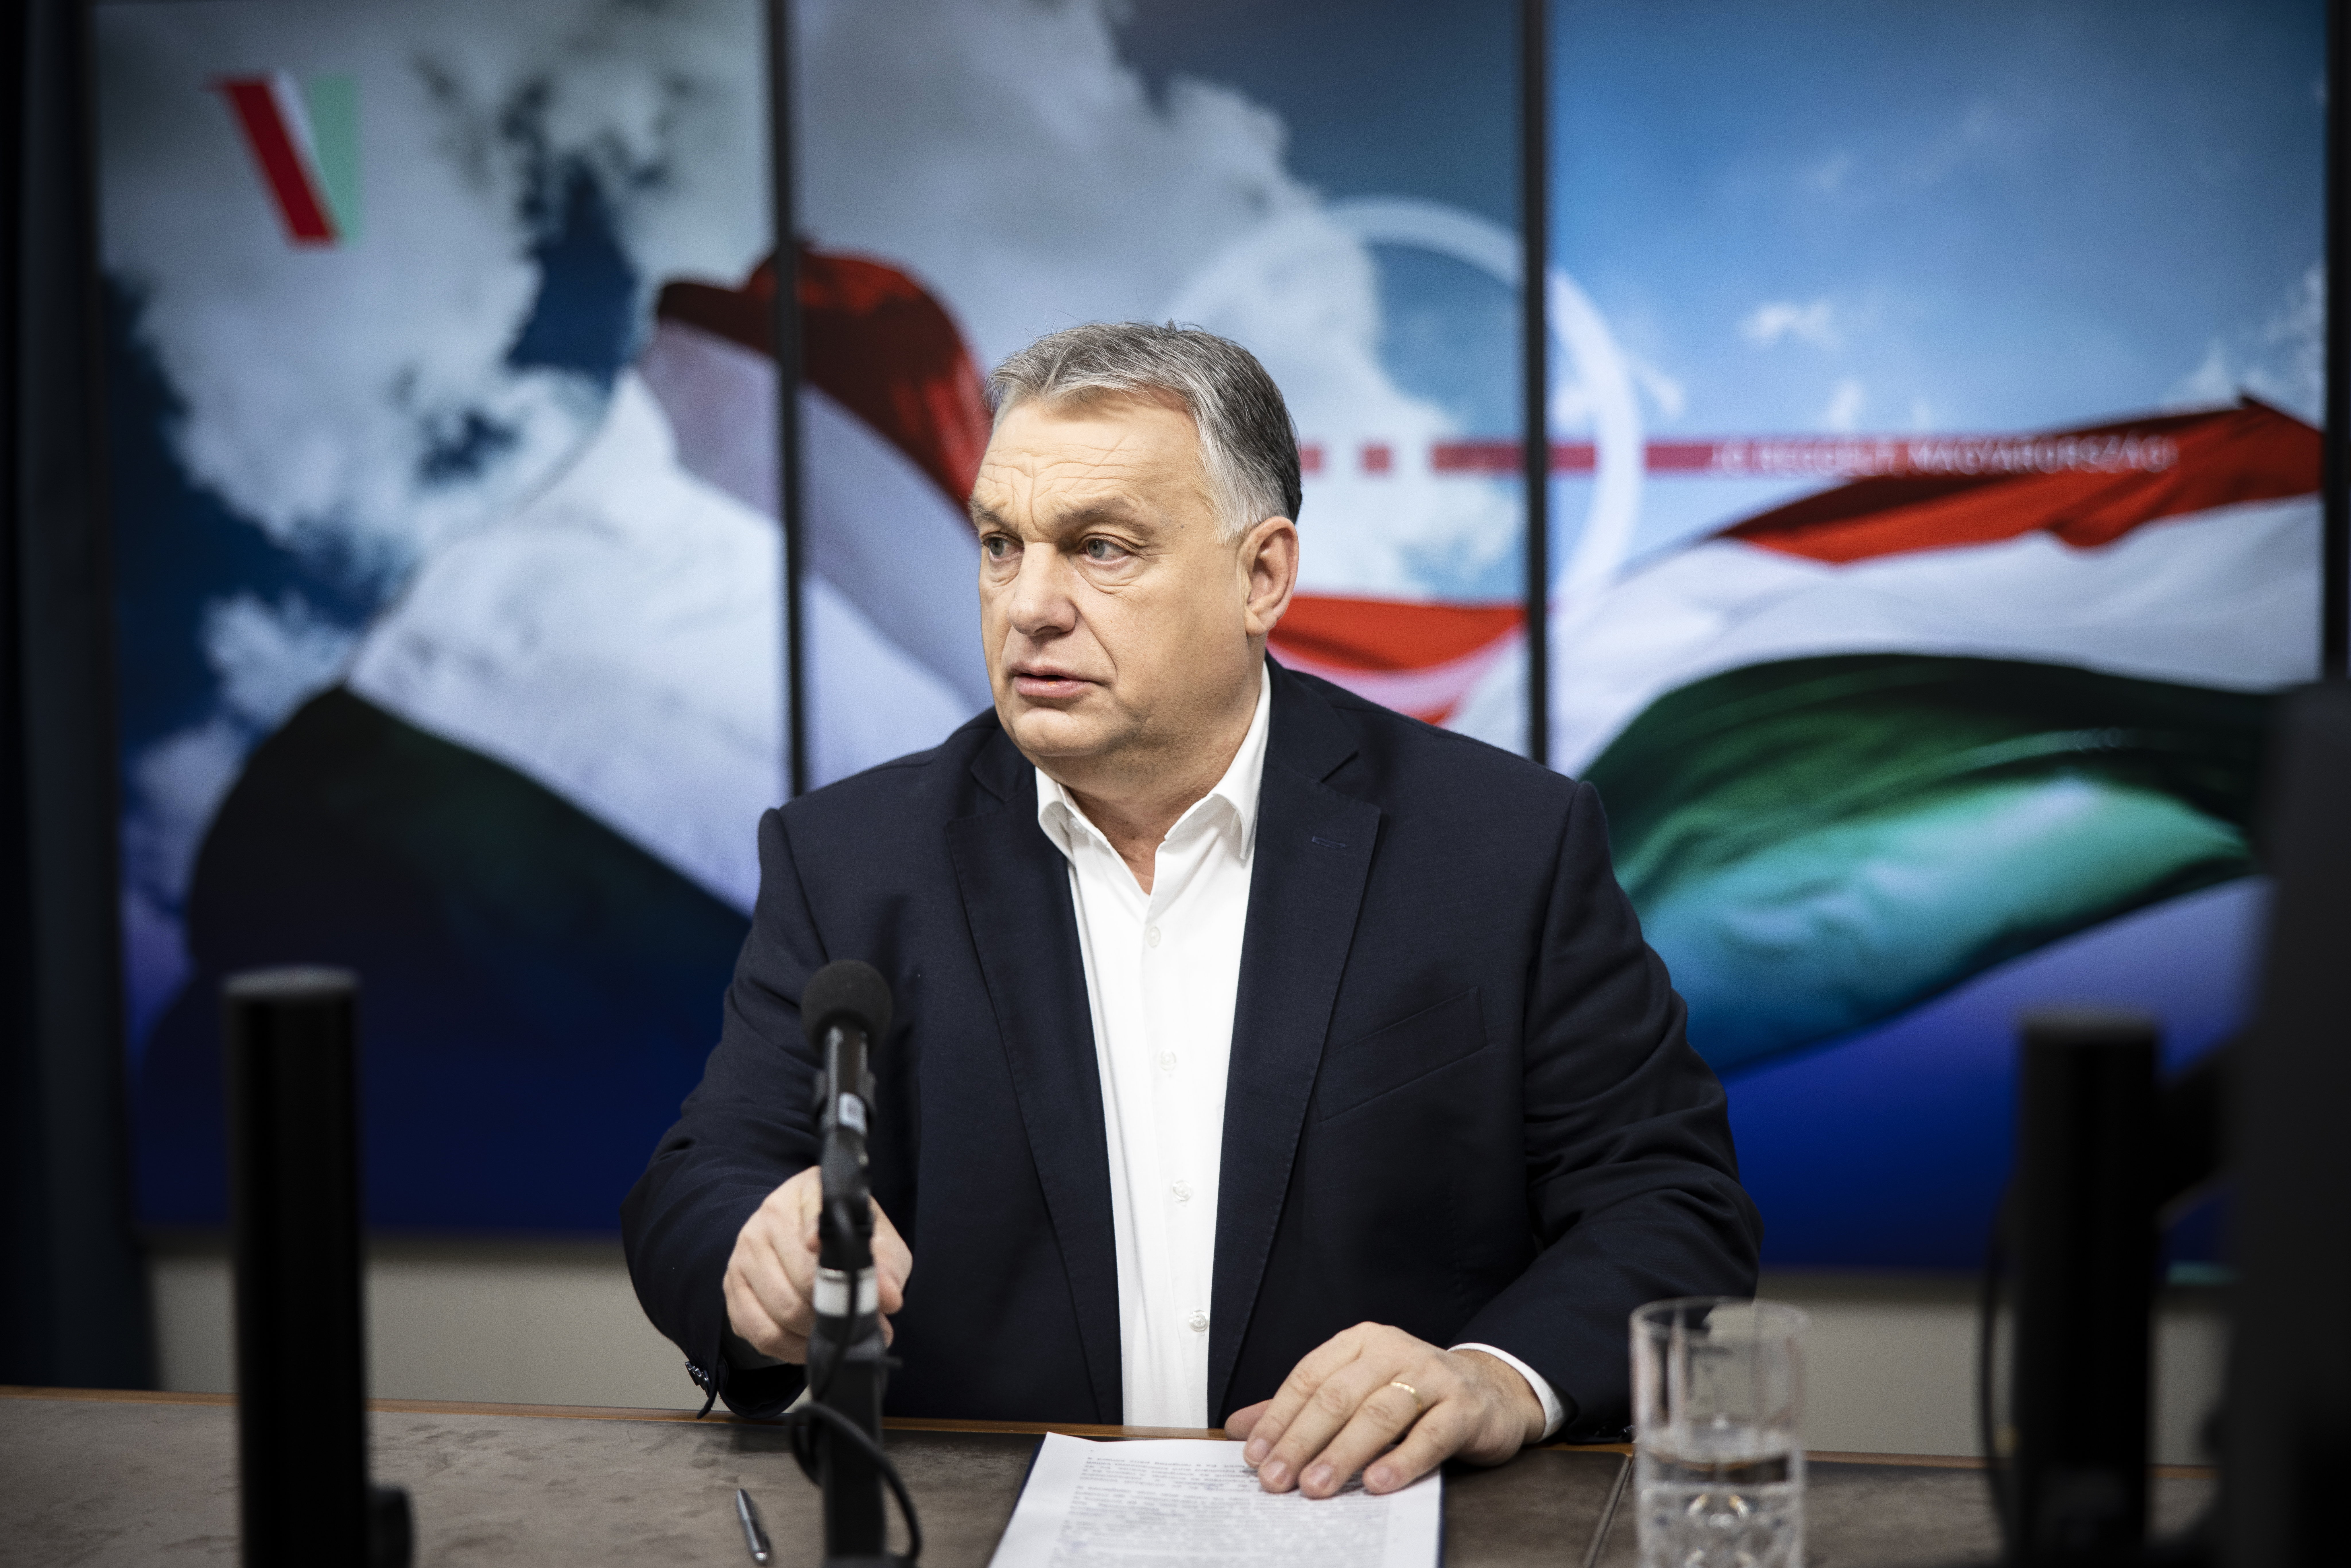 Itt van az Orbán-kormány rendkívüli bejelentése